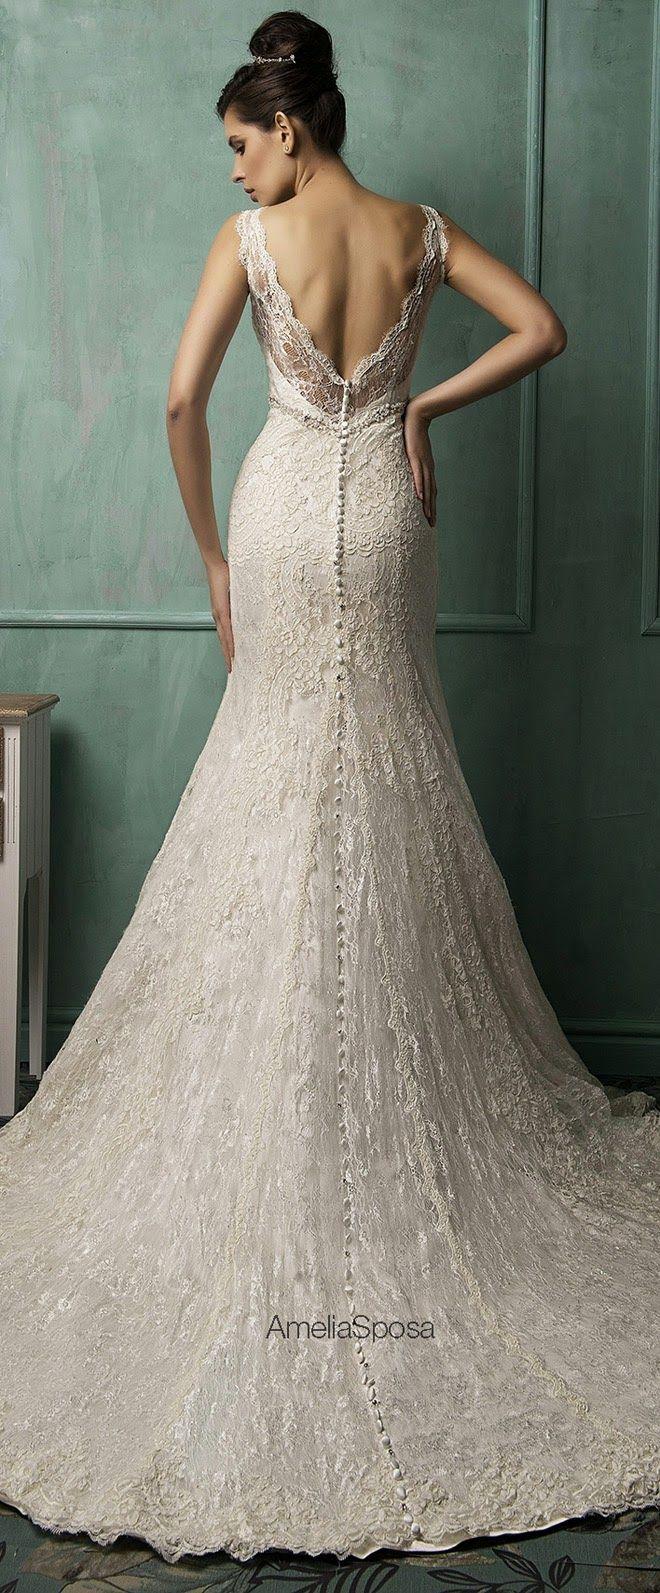 زفاف - Amelia Sposa 2014 Wedding Dresses